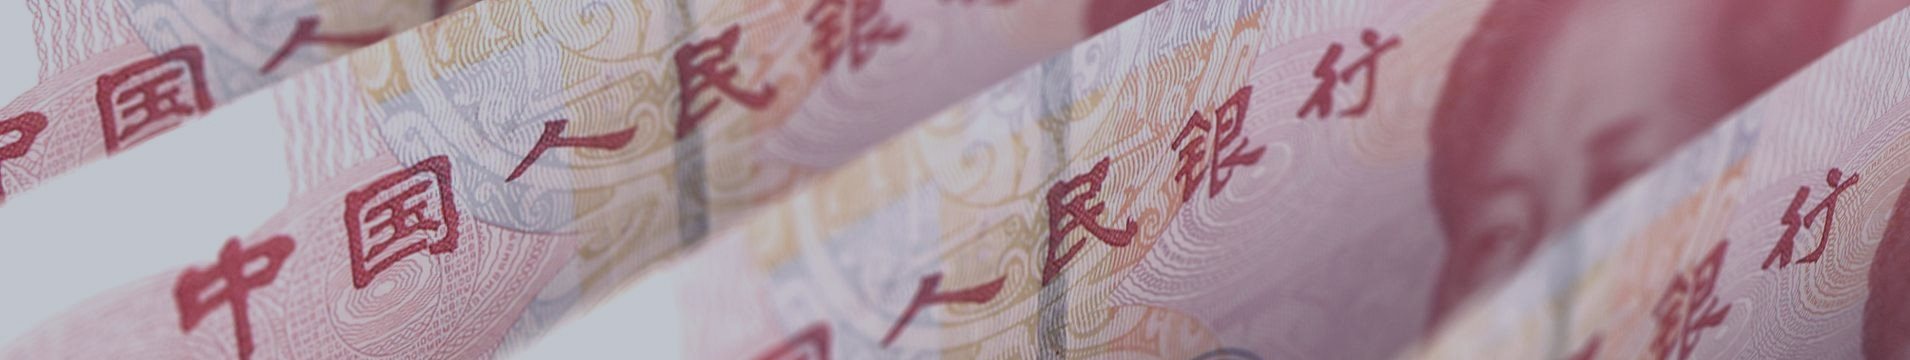 Если юань получит статус резервной валюты, что это будет означать?